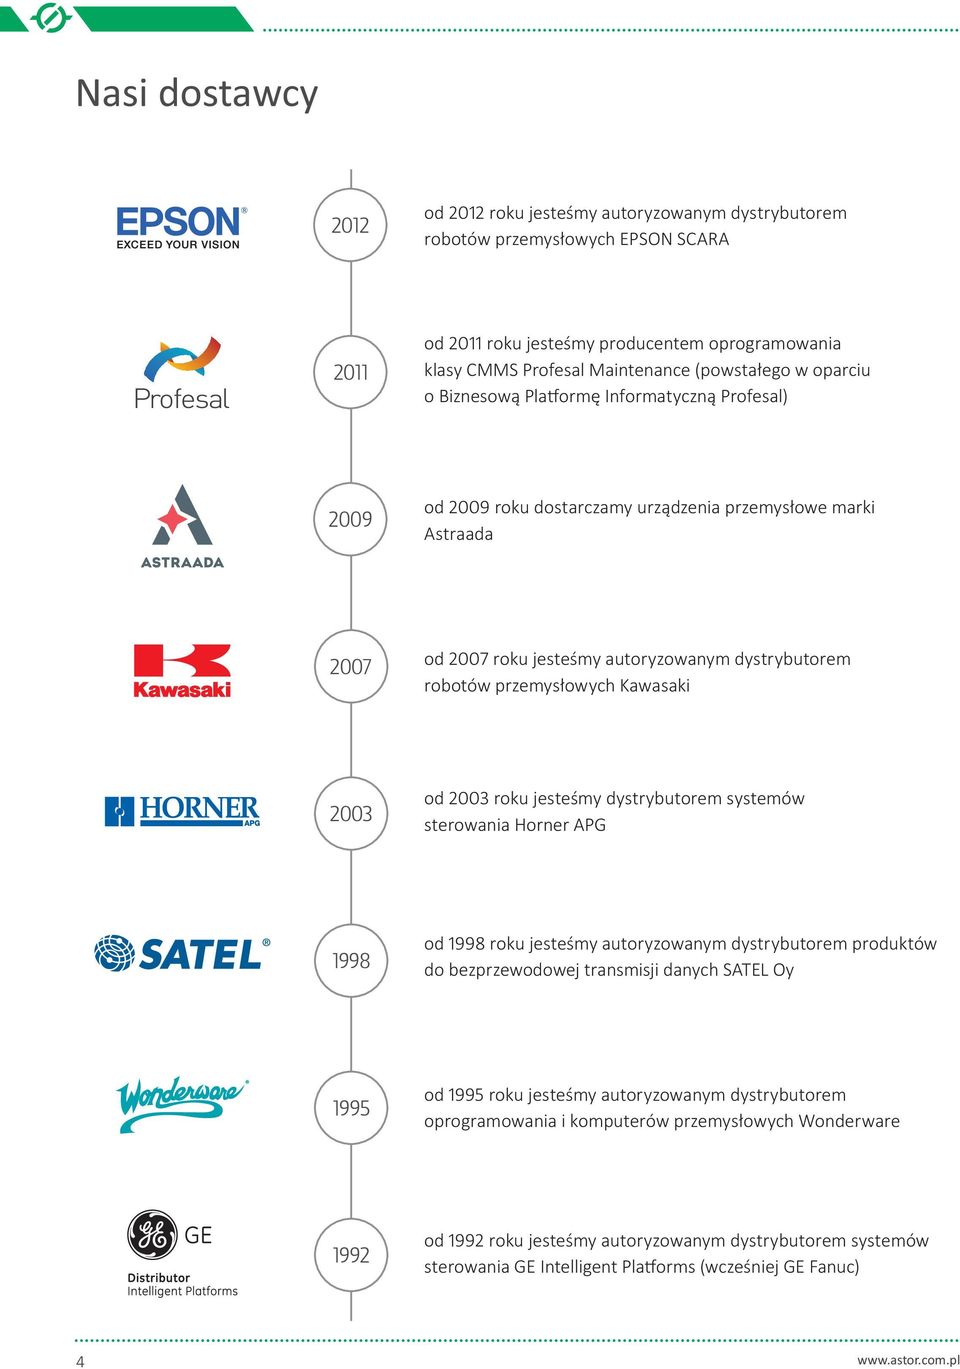 2003 od roku jesteśmy dystrybutorem systemów sterowania Horner APG 1998 od roku jesteśmy autoryzowanym dystrybutorem produktów do bezprzewodowej transmisji danych SATEL Oy 1995 od roku jesteśmy